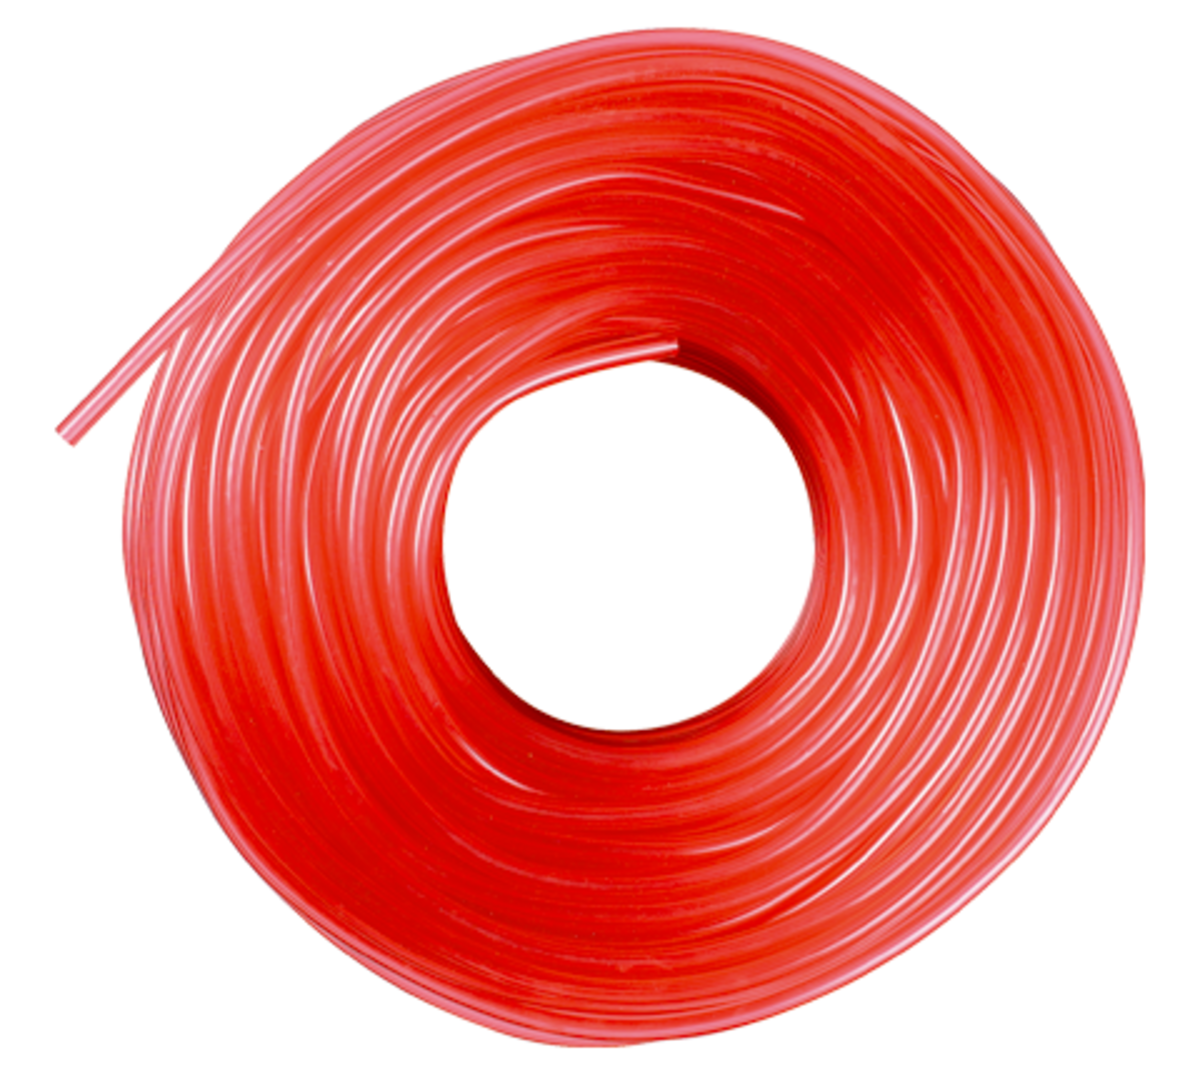 AFRISO PVC-Schlauch 4 x 2mm, rot L: 100 m, öl- und wasserfest VOR 2940 2970